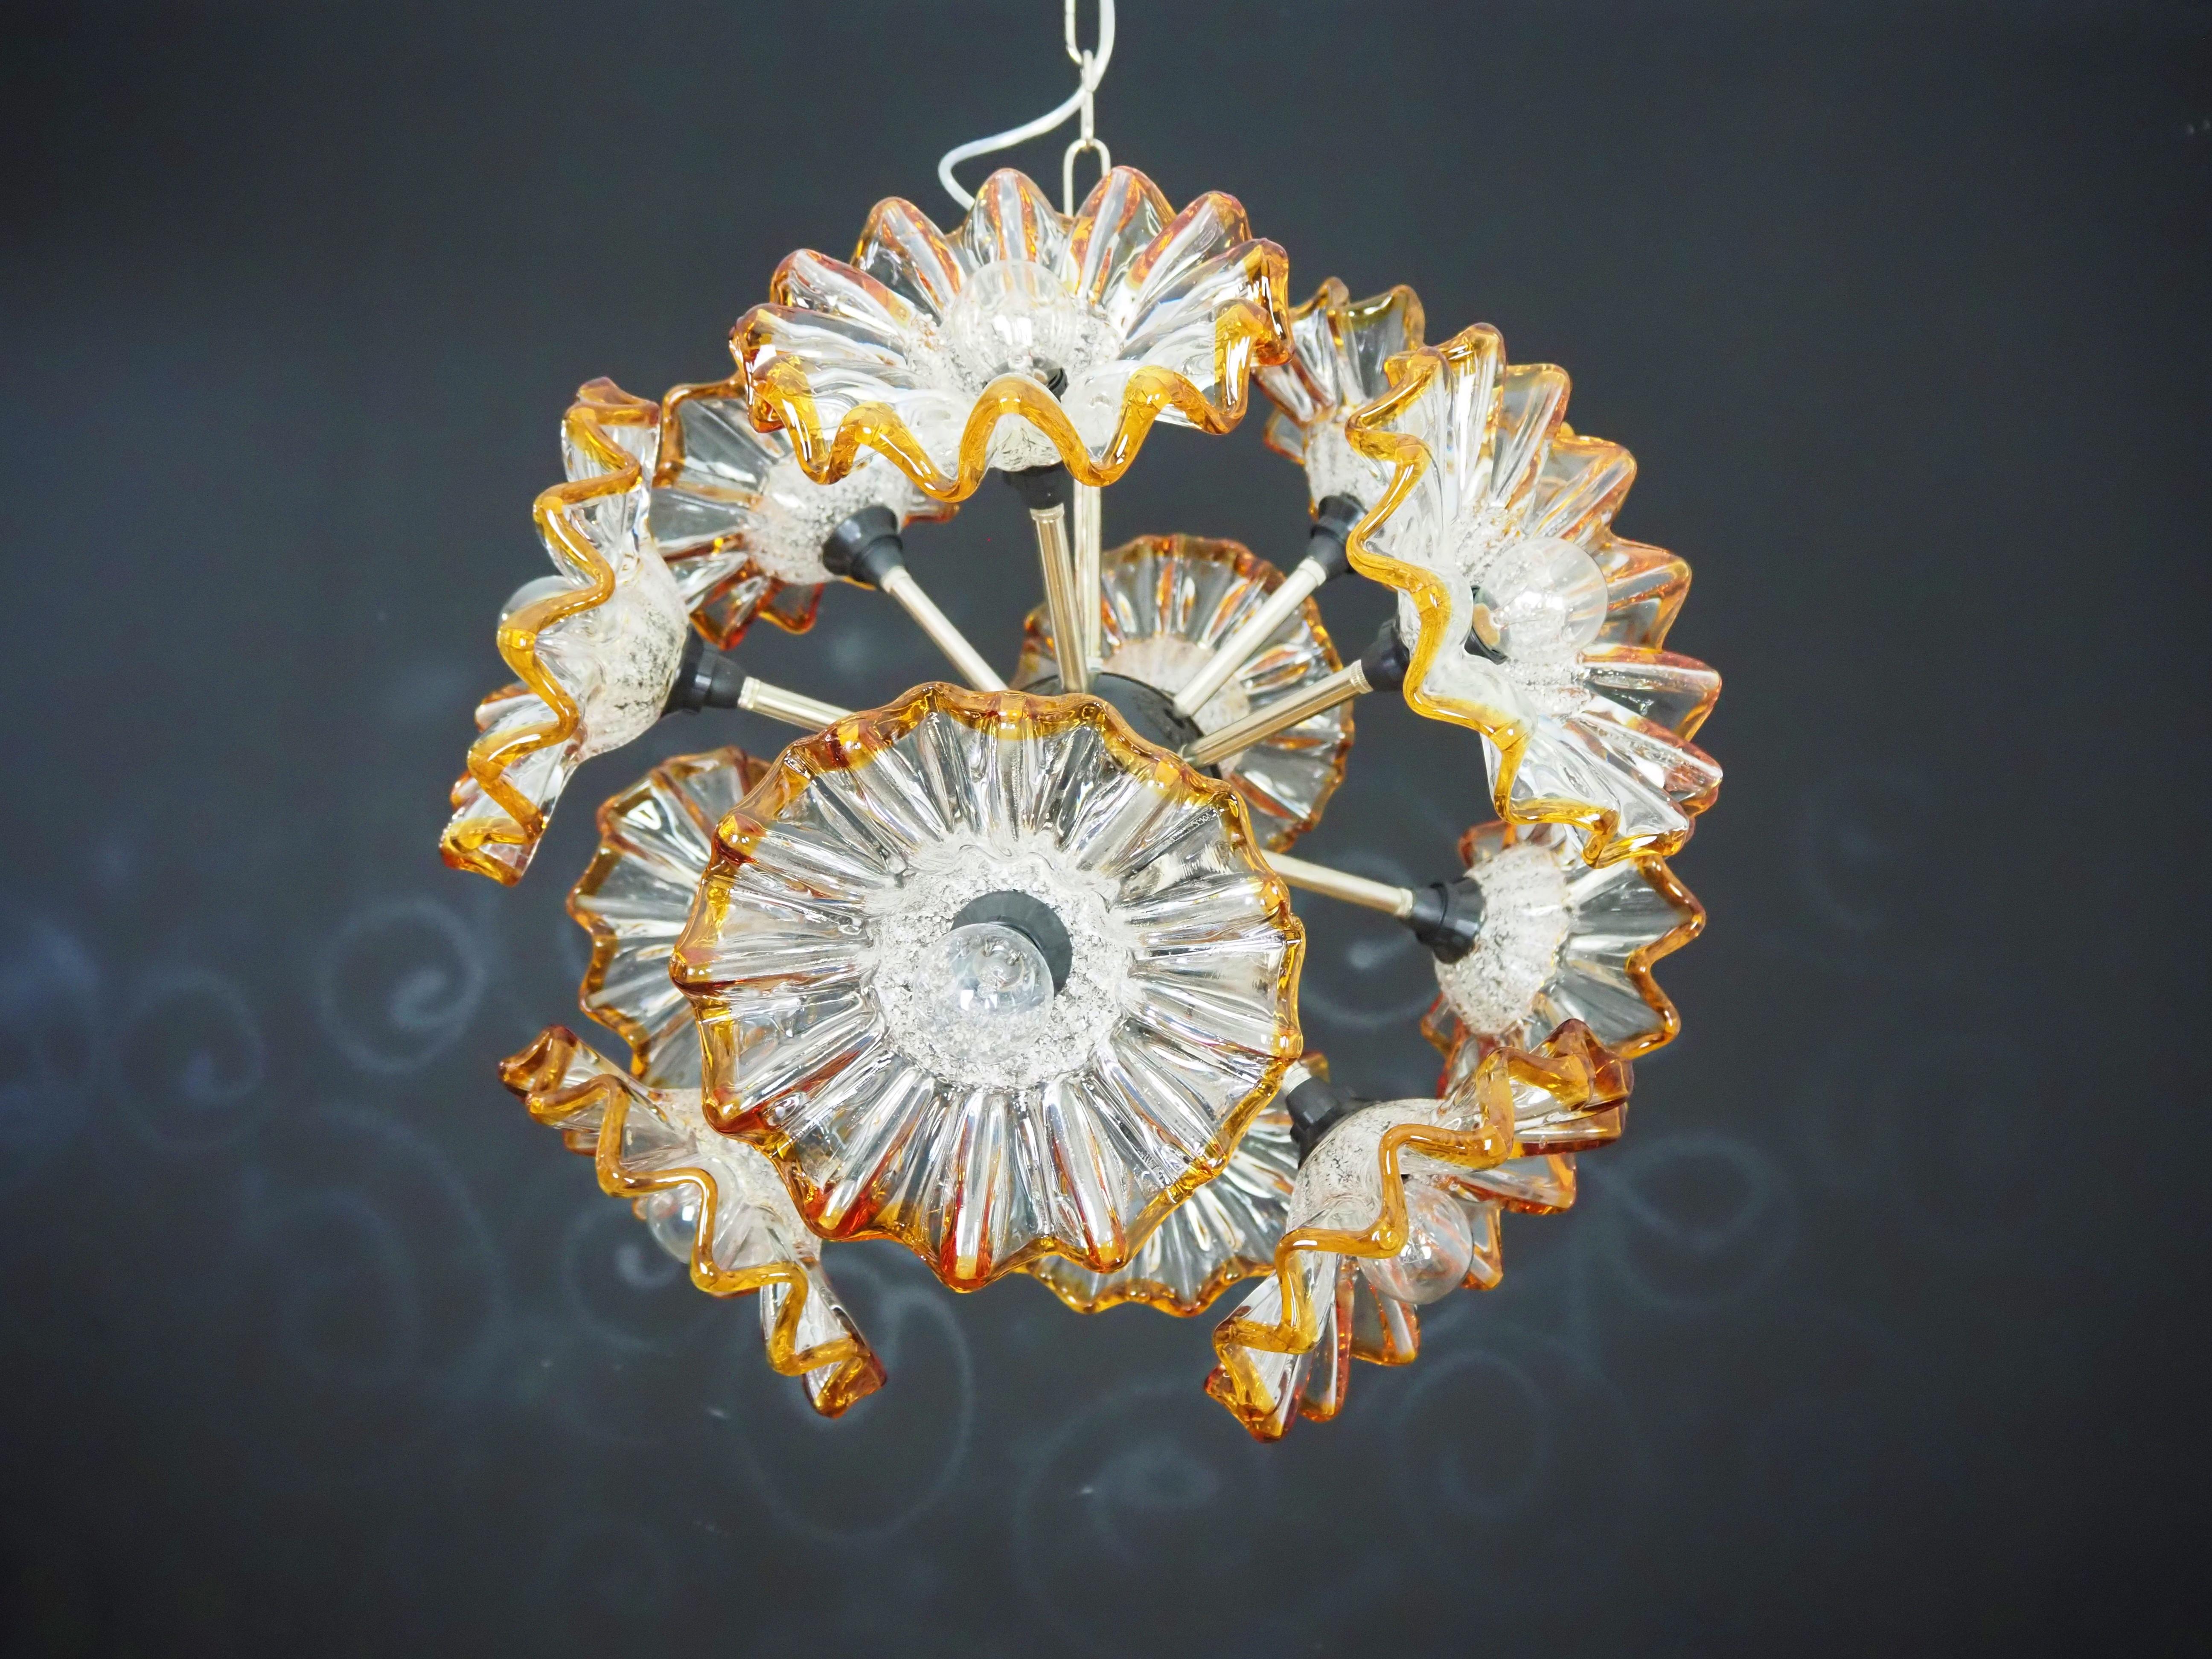 Art Glass Vintage Sputnik Italian crystal chandelier - 12 flowers